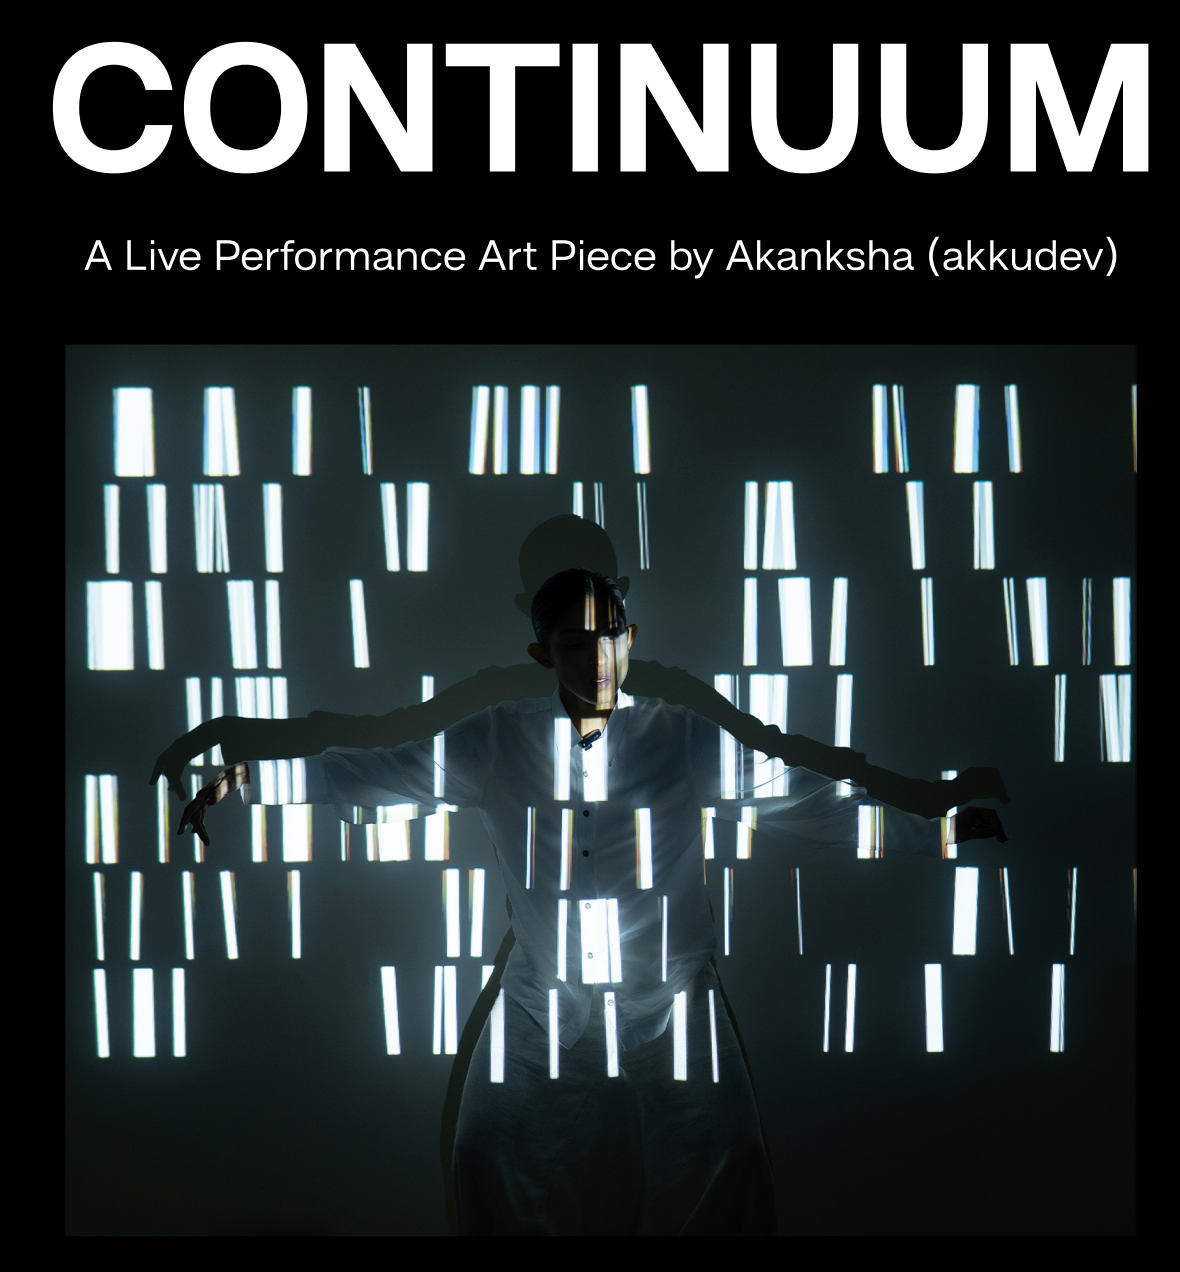 Continuum by Akanksha (Akkudev) | Performance Art | Method Juhu